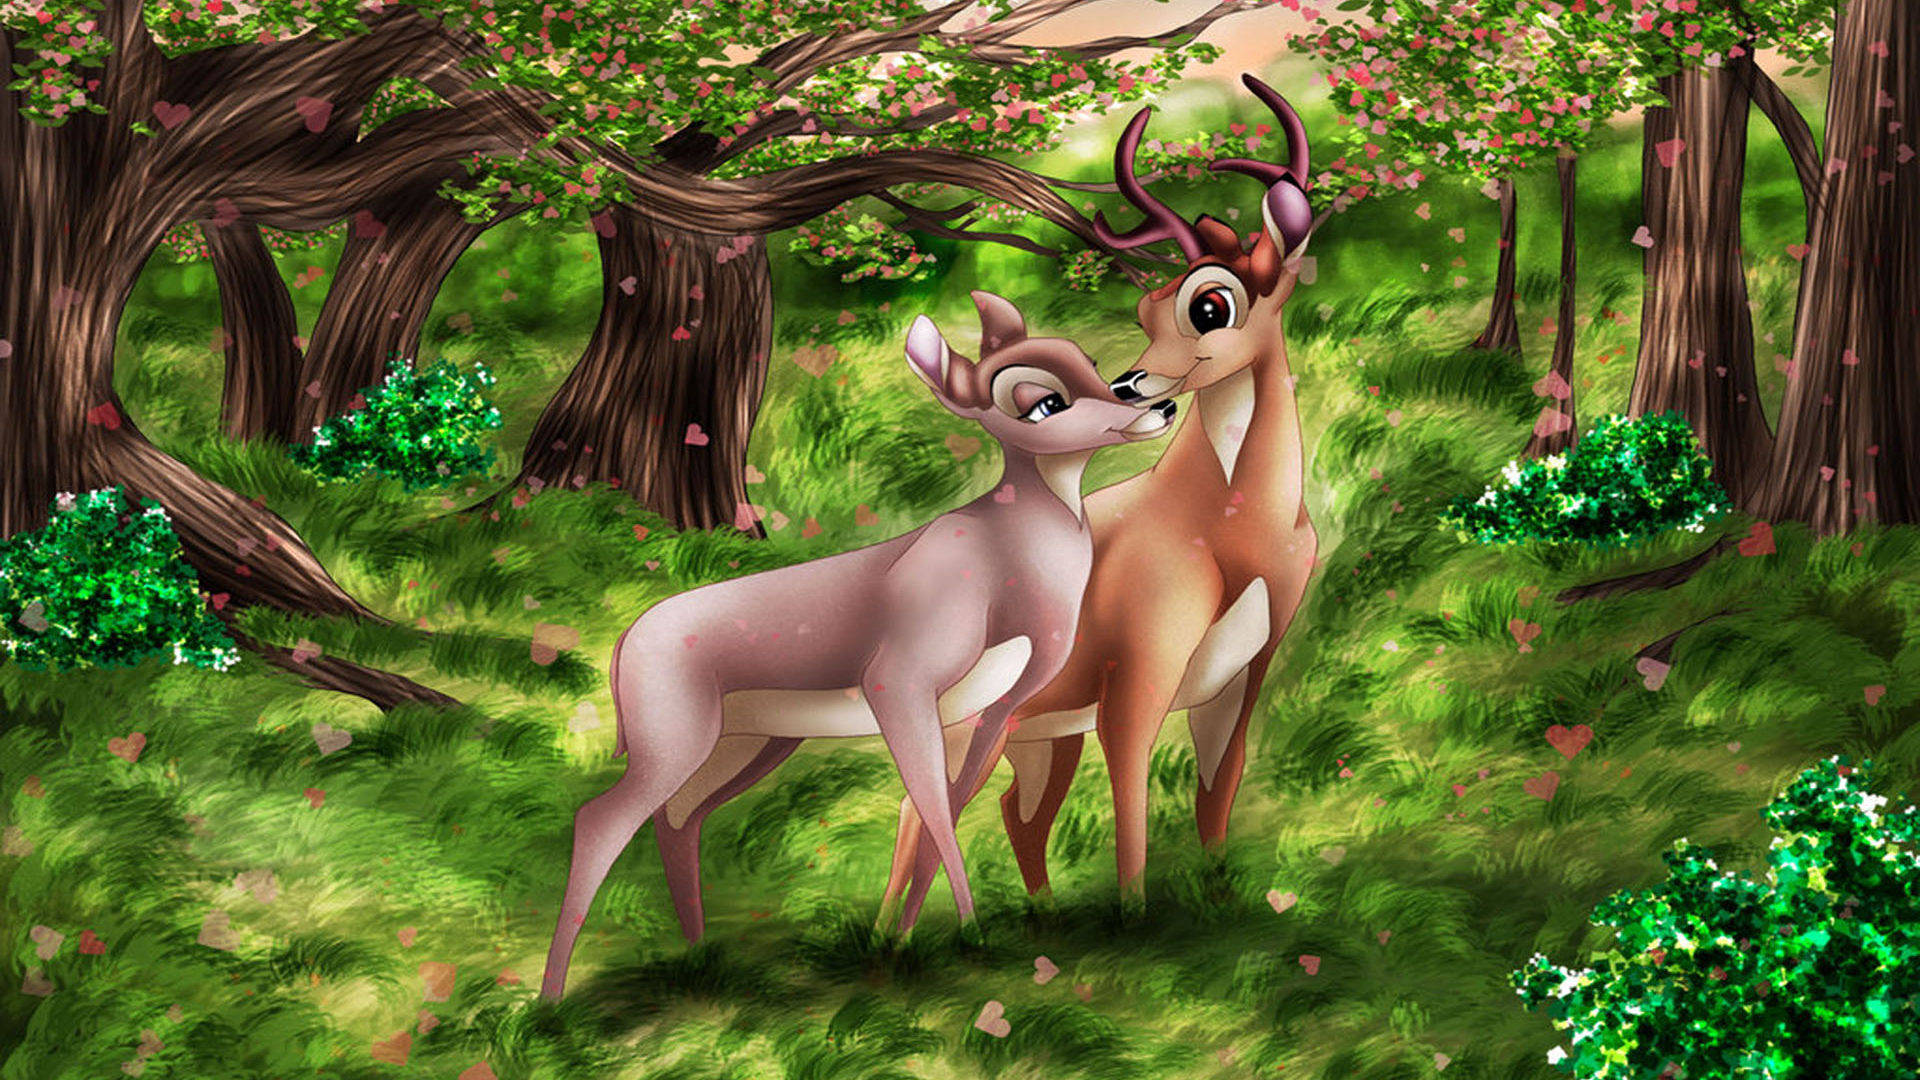 Bambi and faline grown up